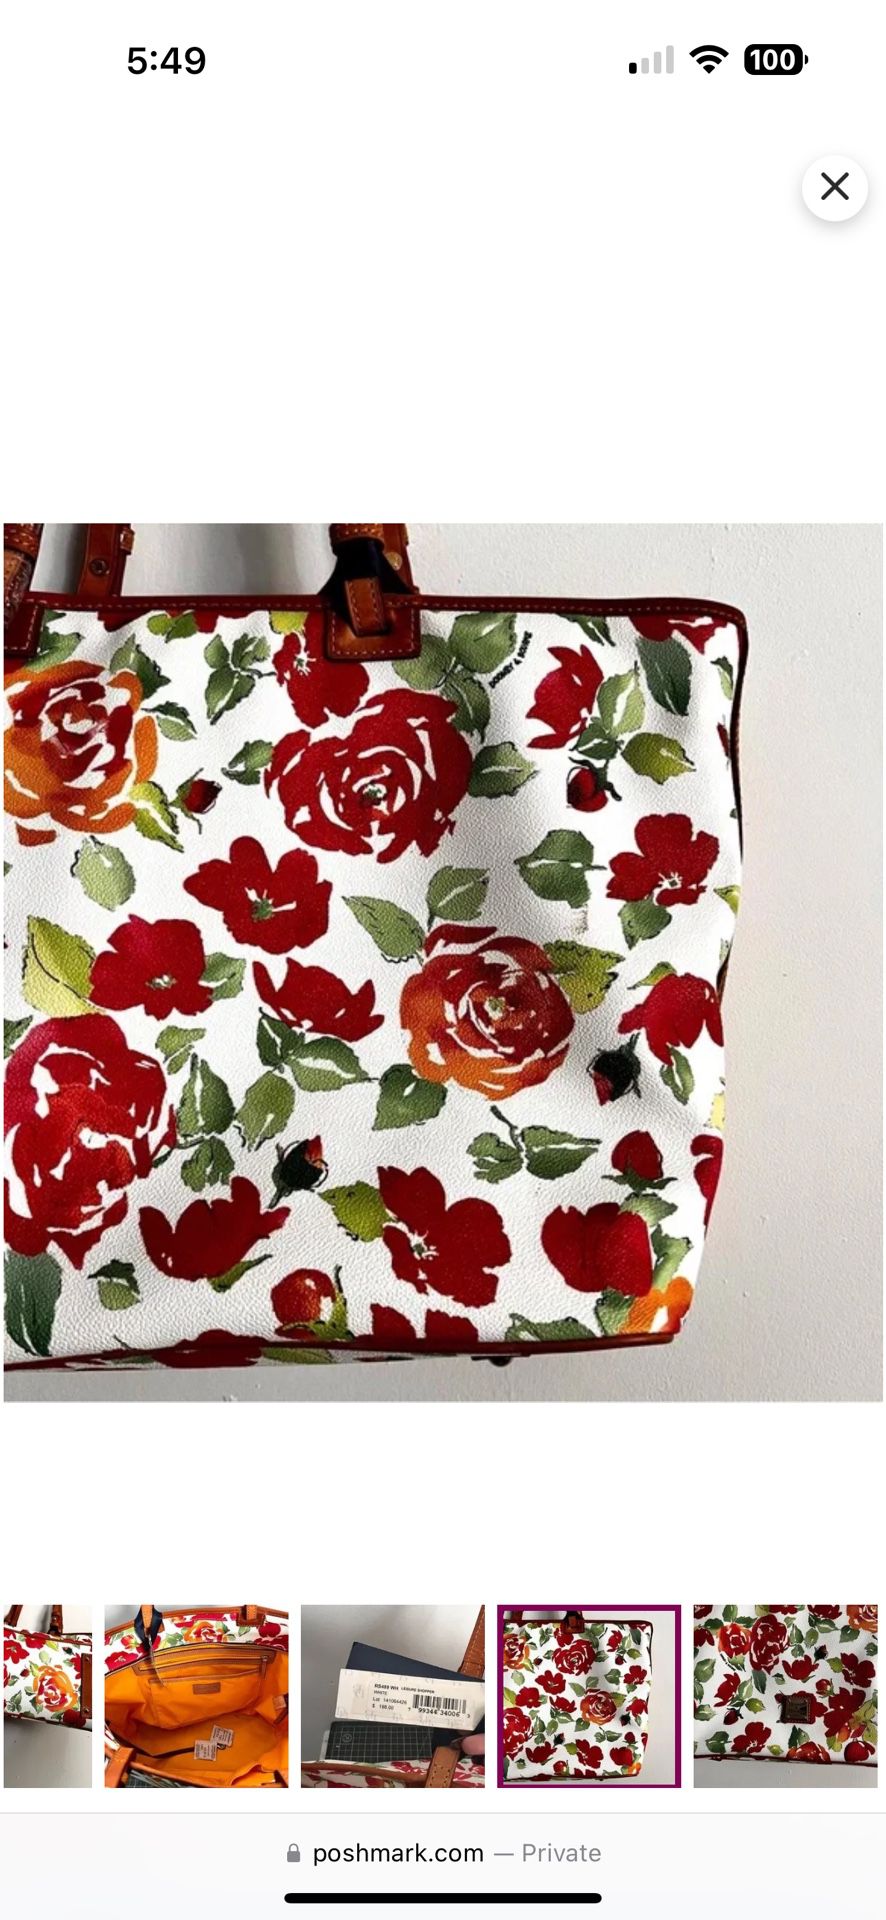 Dooney & Bourke Large Floral Rose Garden Leisure Shopper Travel Tote Bag